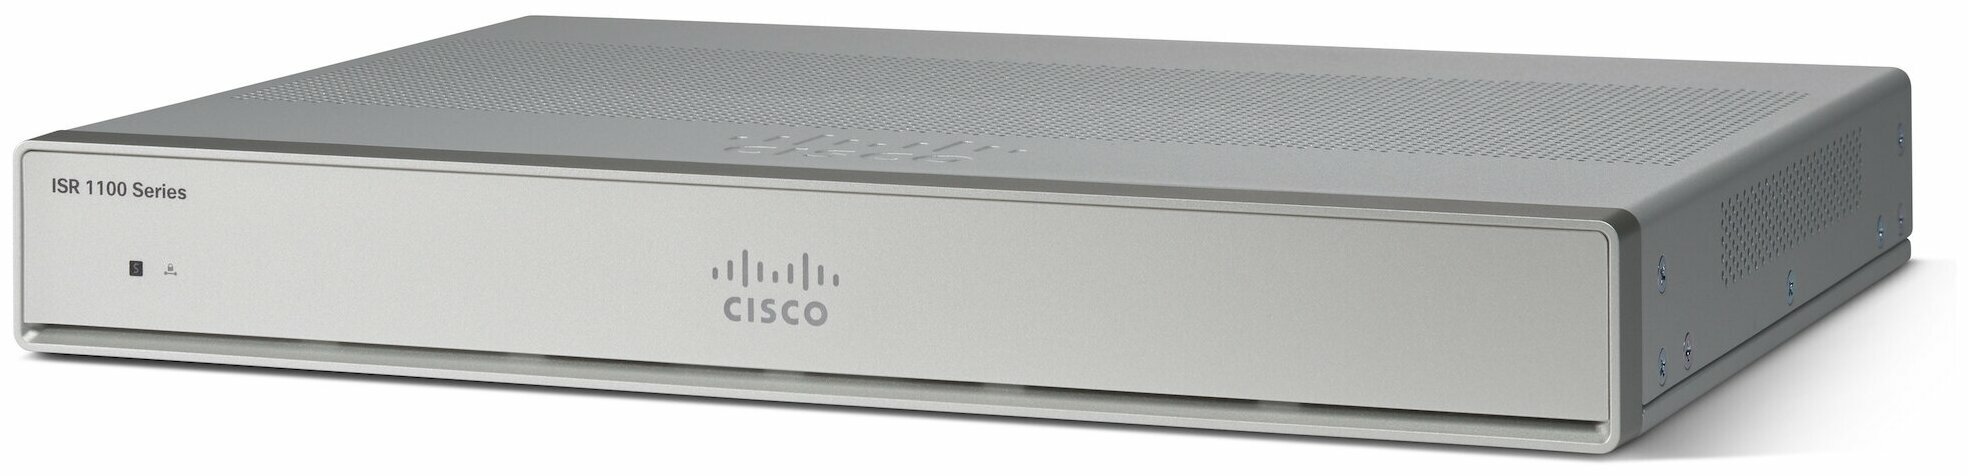 Cisco C1111-4P C1100 серия коммерческих маршрутизаторов